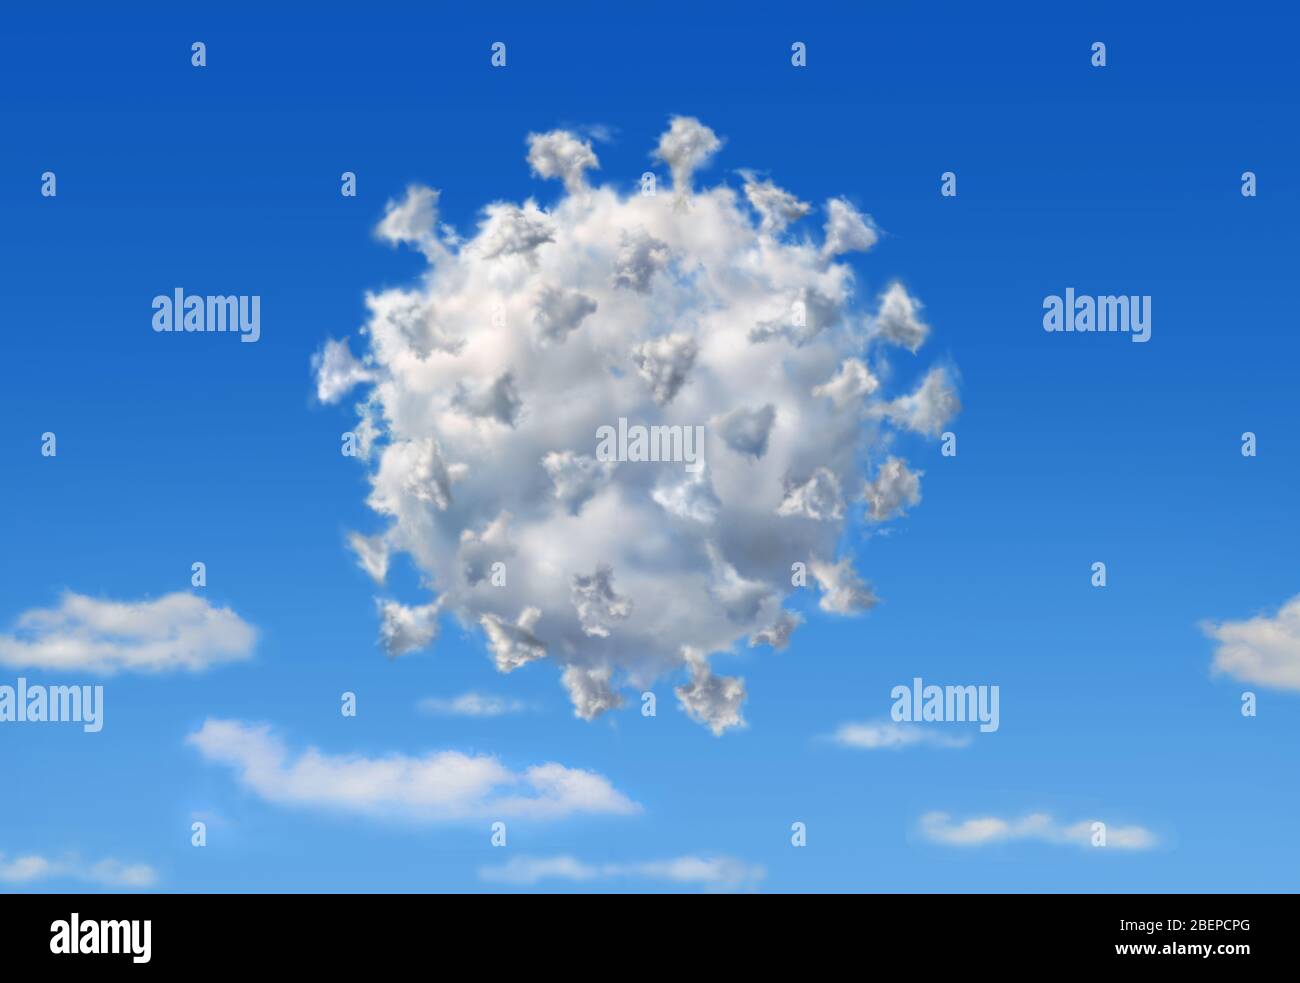 Flauschige Wolke in der Form von Coronavirus Covid19, auf blauem Himmel mit einigen anderen unteren Wolken. Abbildung des Konzepts. Stockfoto